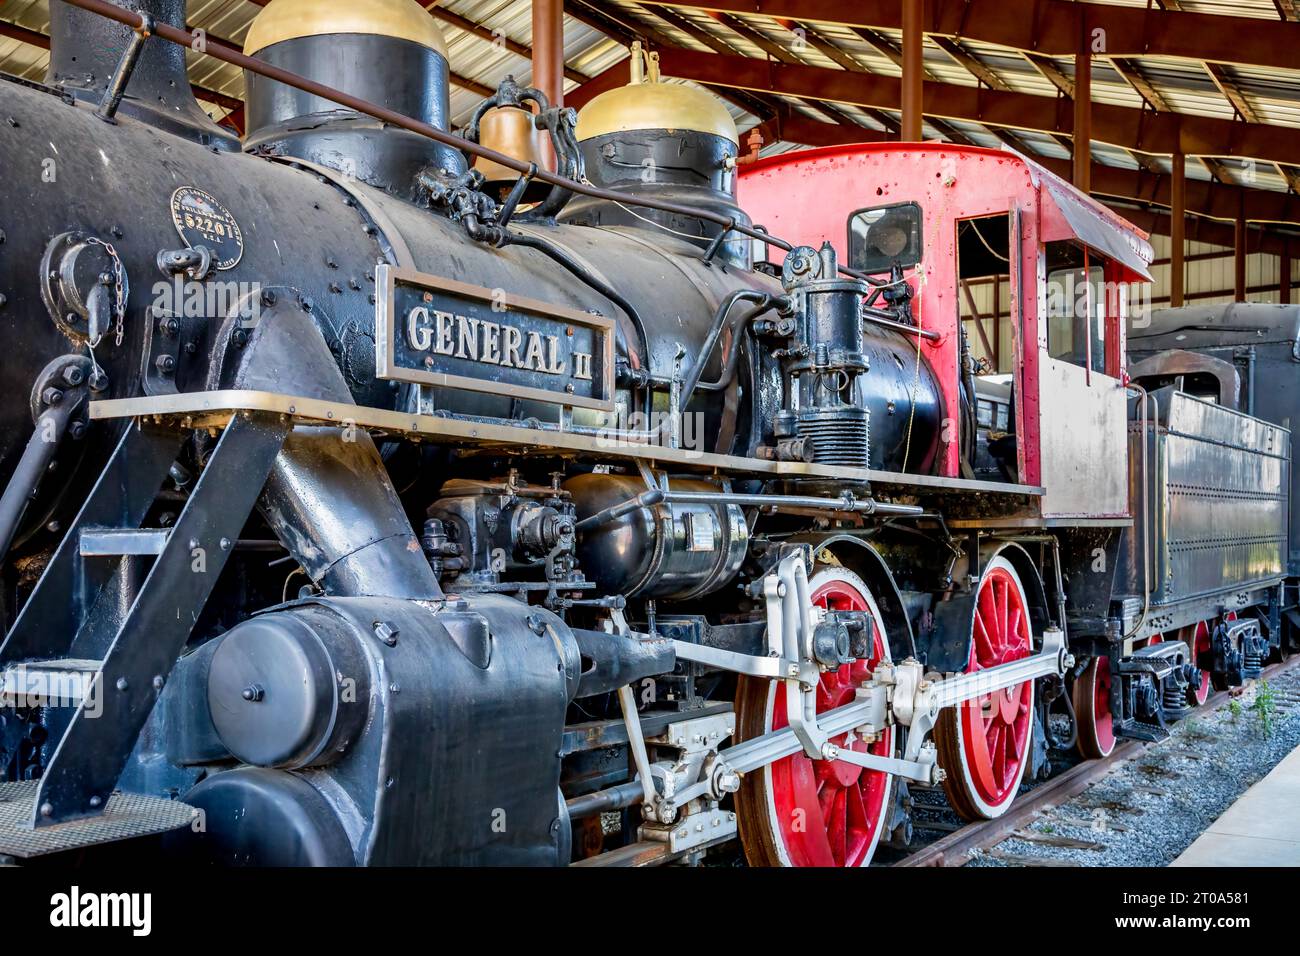 Généralités II - locomotive à vapeur 4-4-0 Banque D'Images